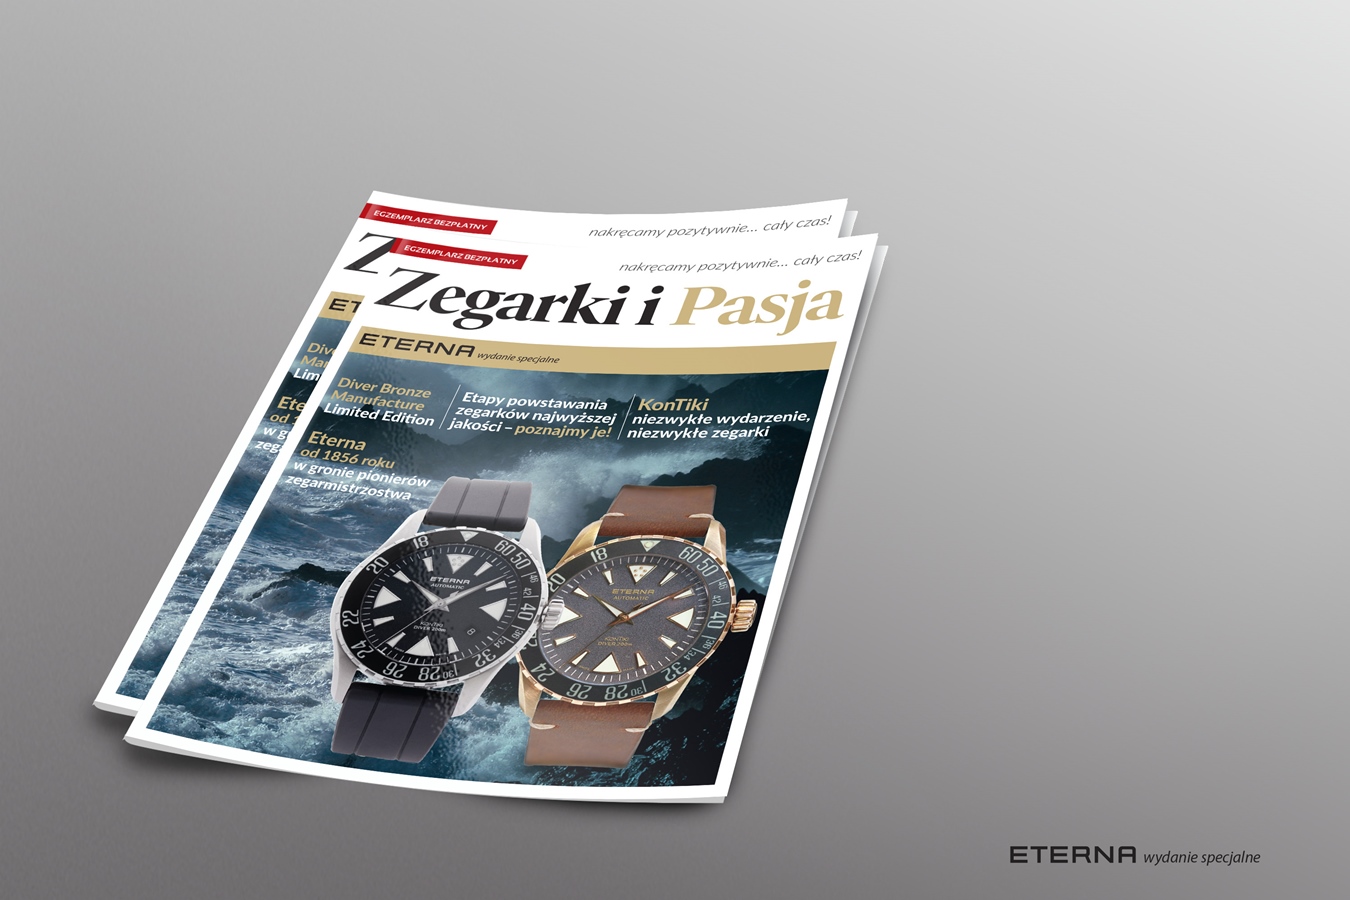 Zegarki i Pasja: ETERNA – wydanie specjalne